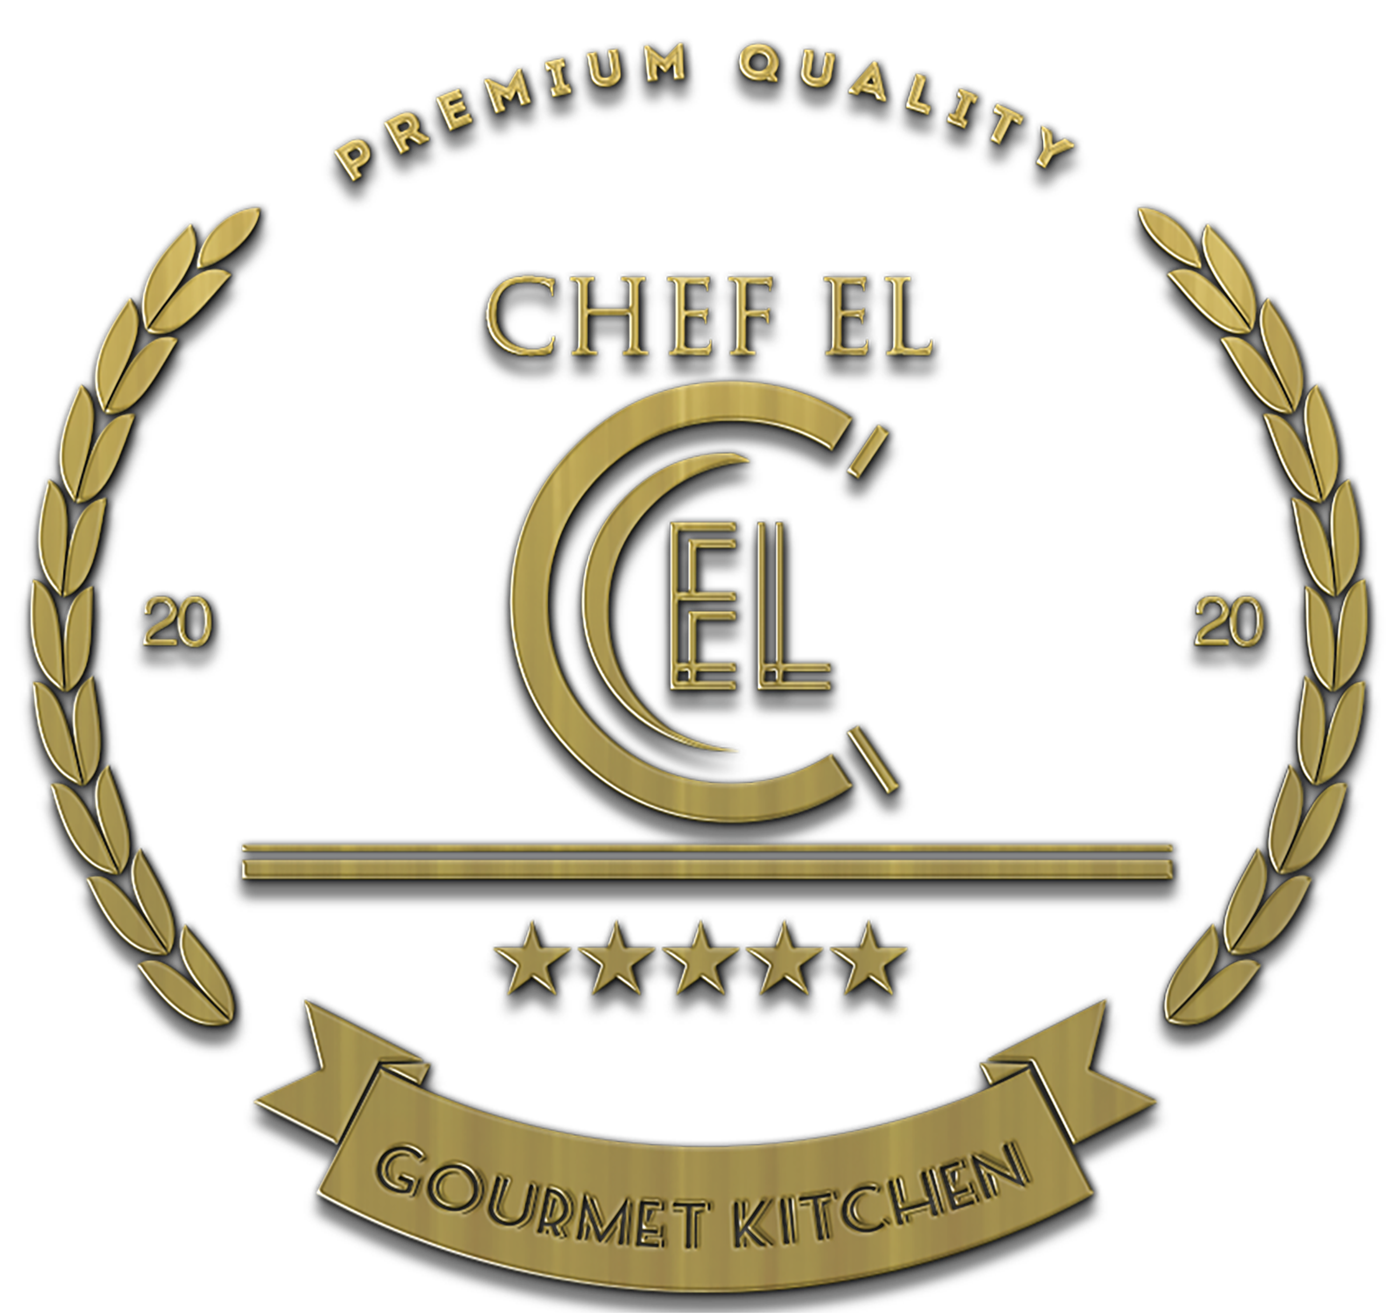 Chef El’s Gourmet Kitchen